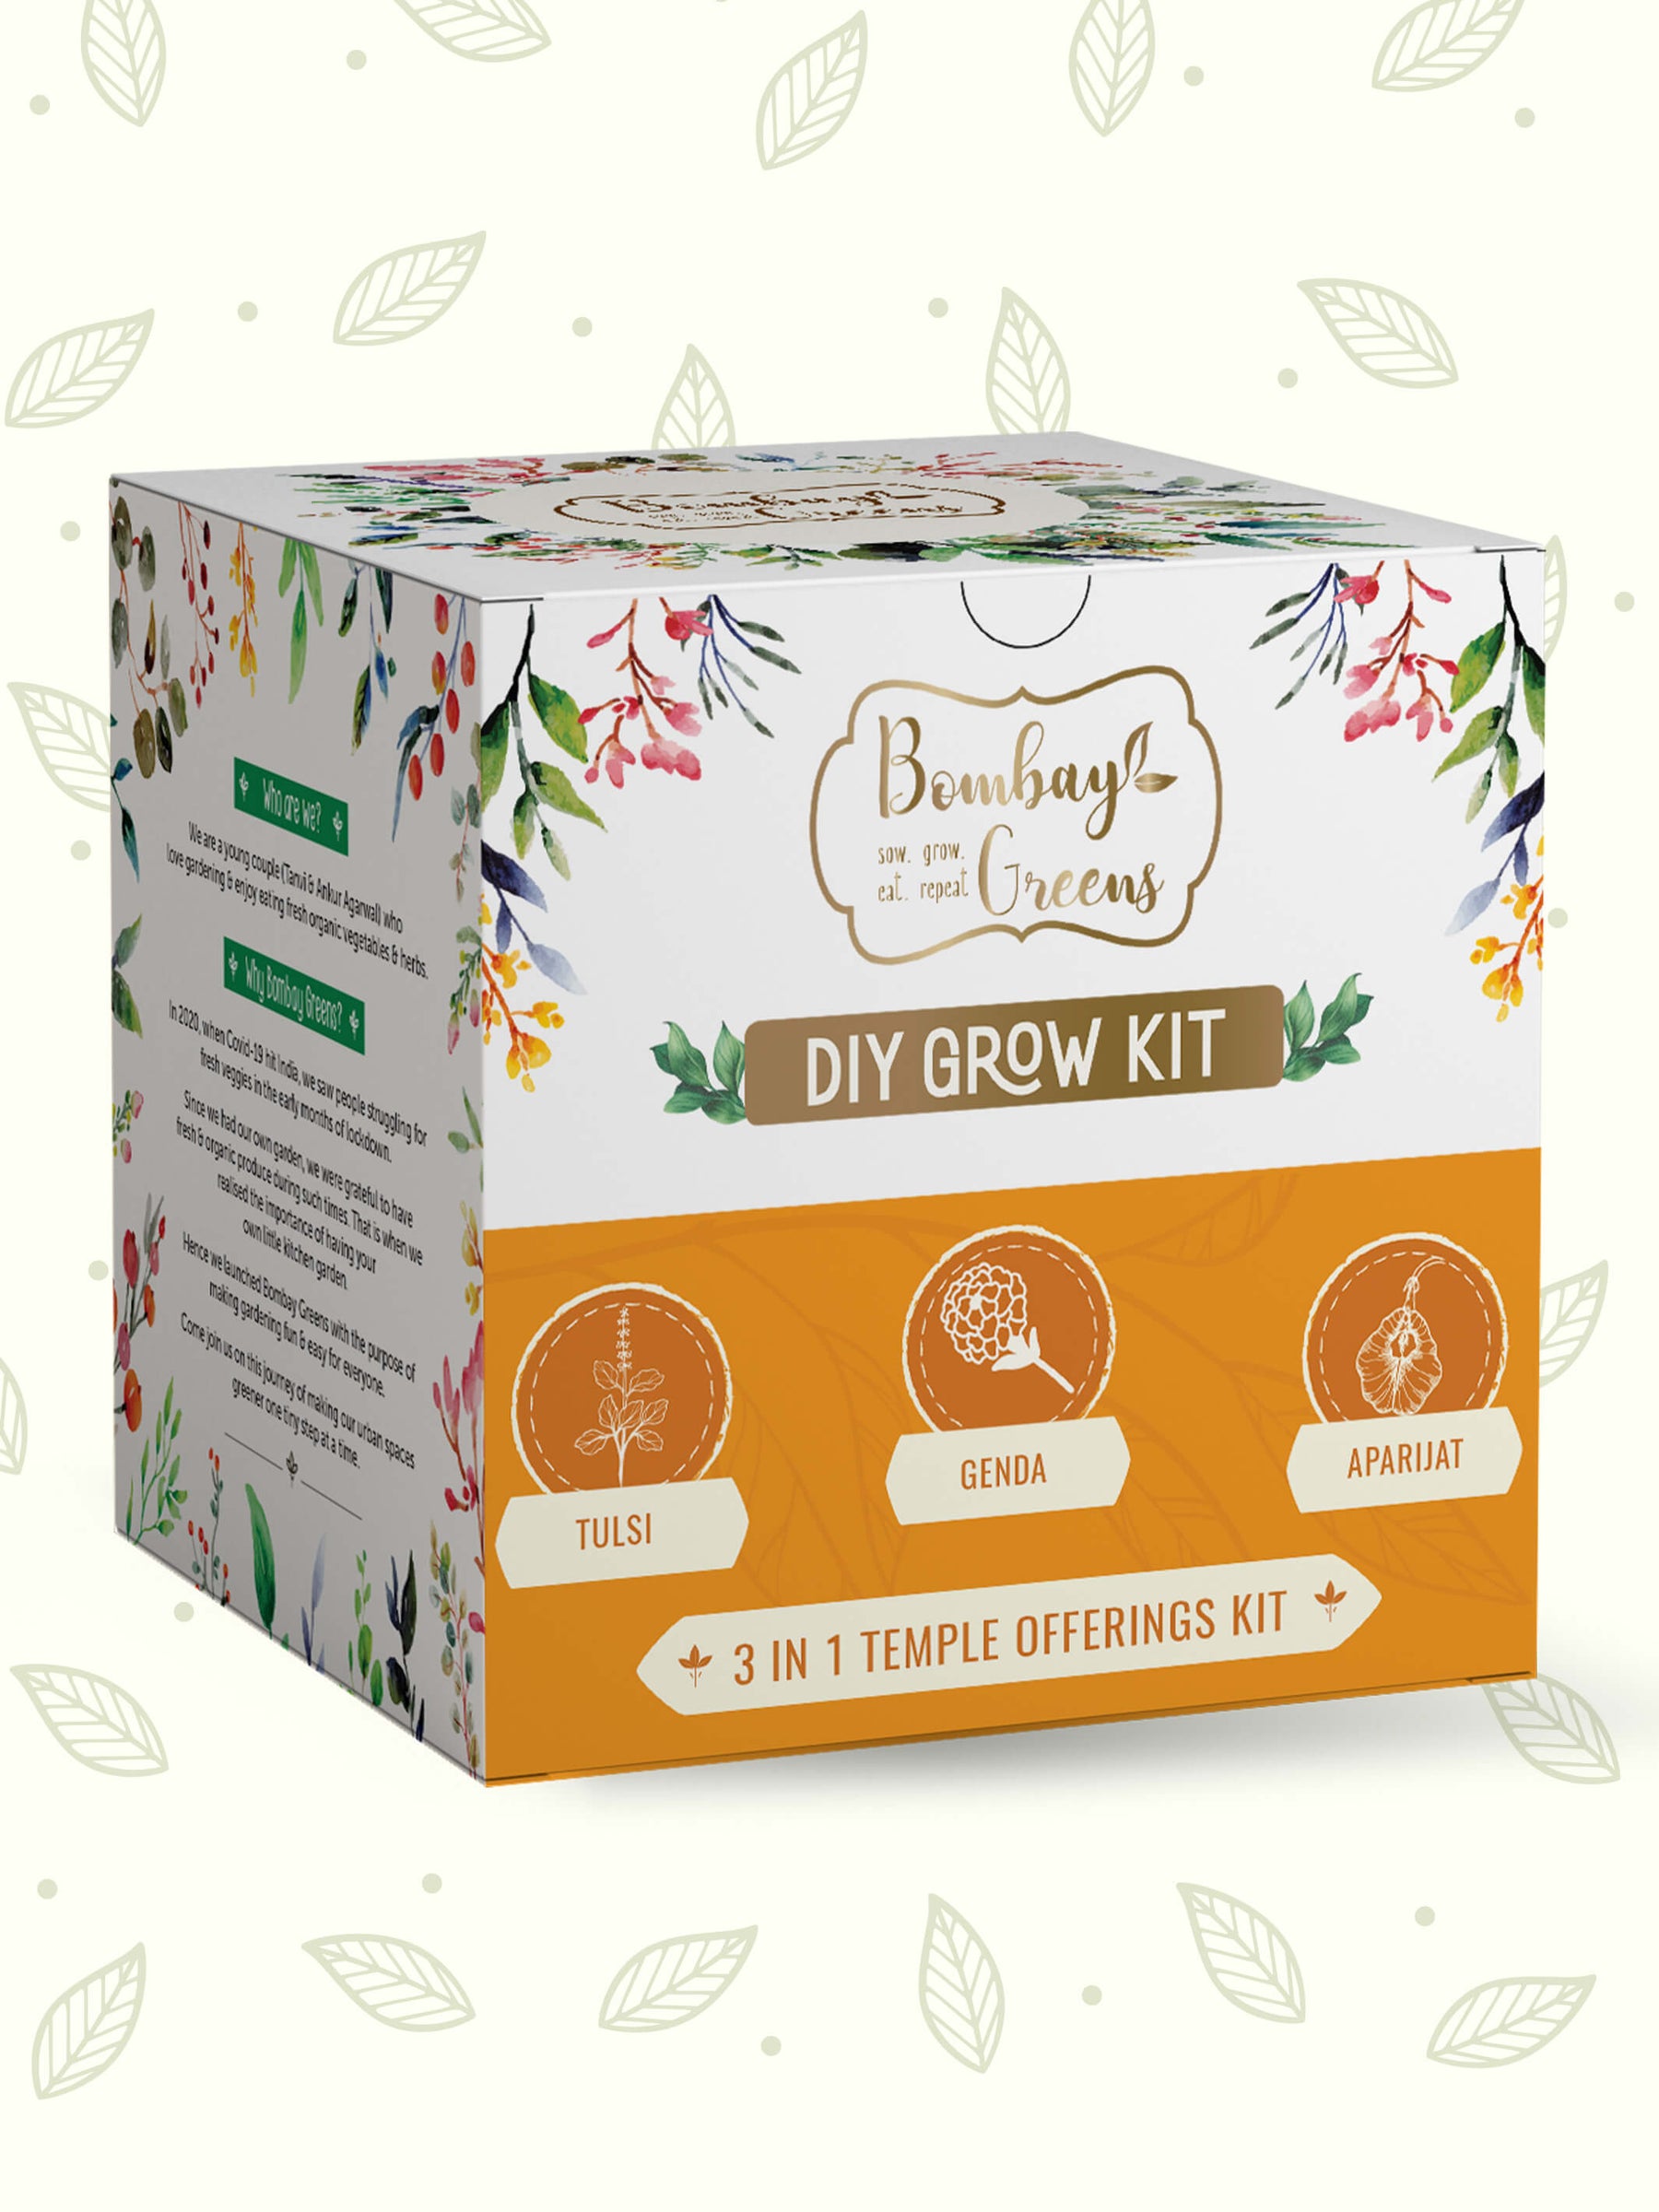 grow kit, vegetable gardening kits, diy gardening kit